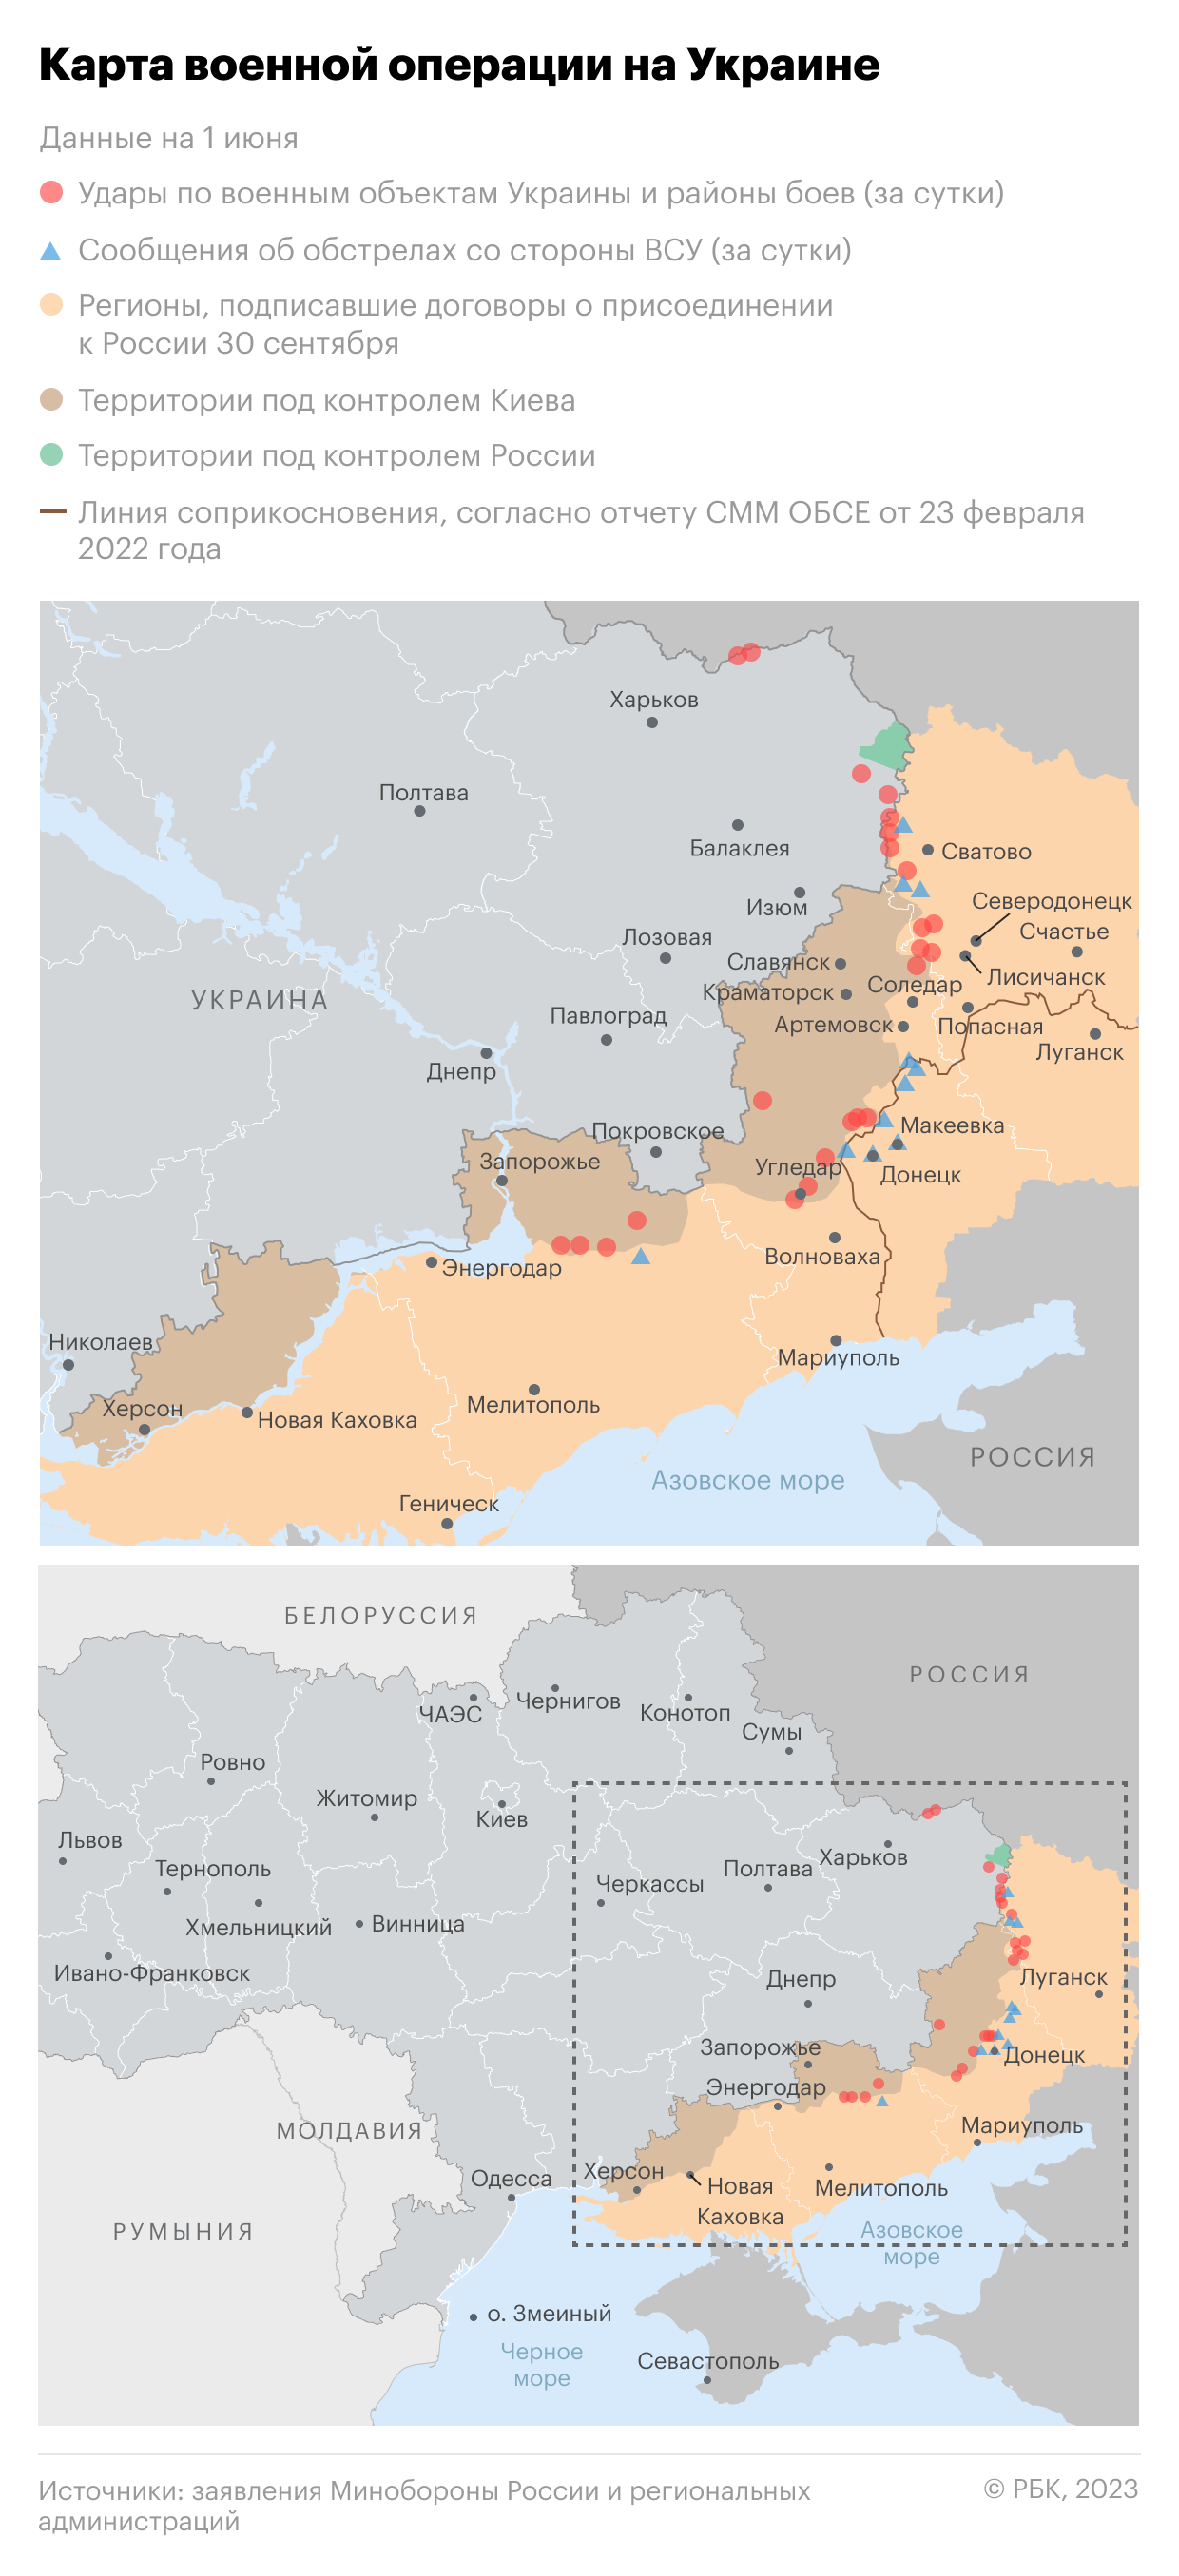 Военная операция на Украине. Карта на 1 июня